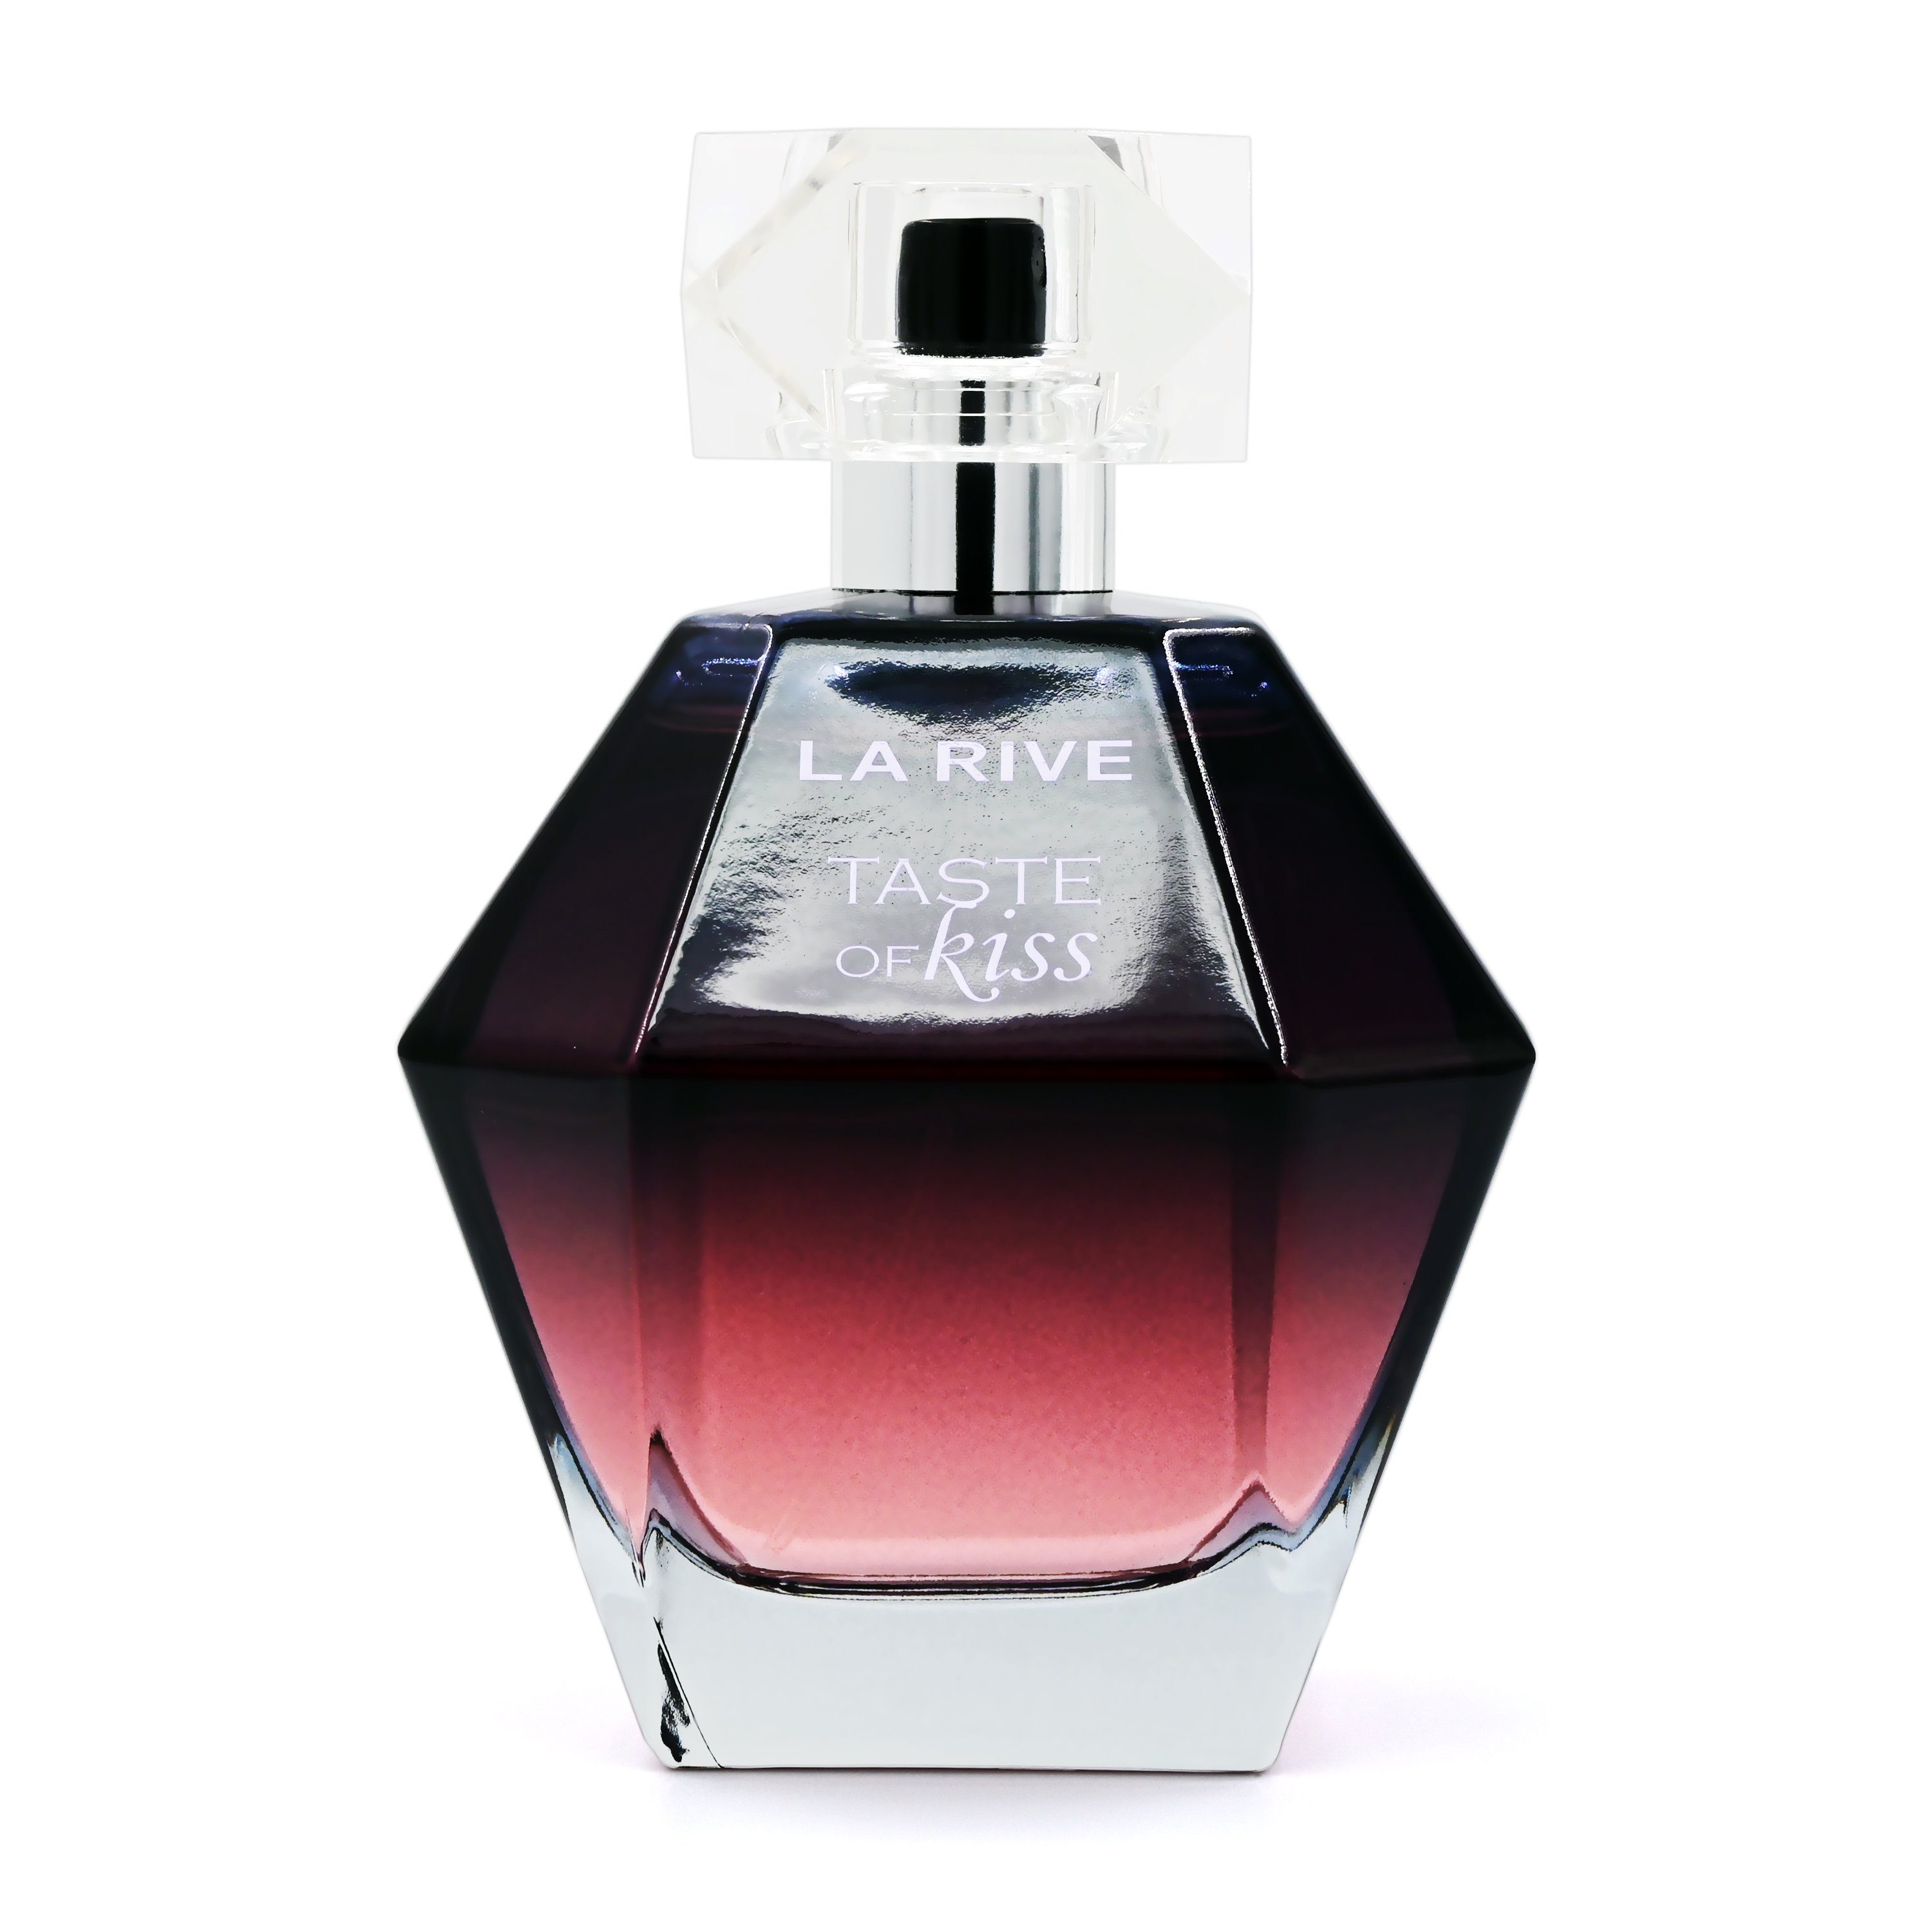 La Rive Eau de Parfum - - de Taste of Eau 100 ml RIVE Parfum LA Kiss